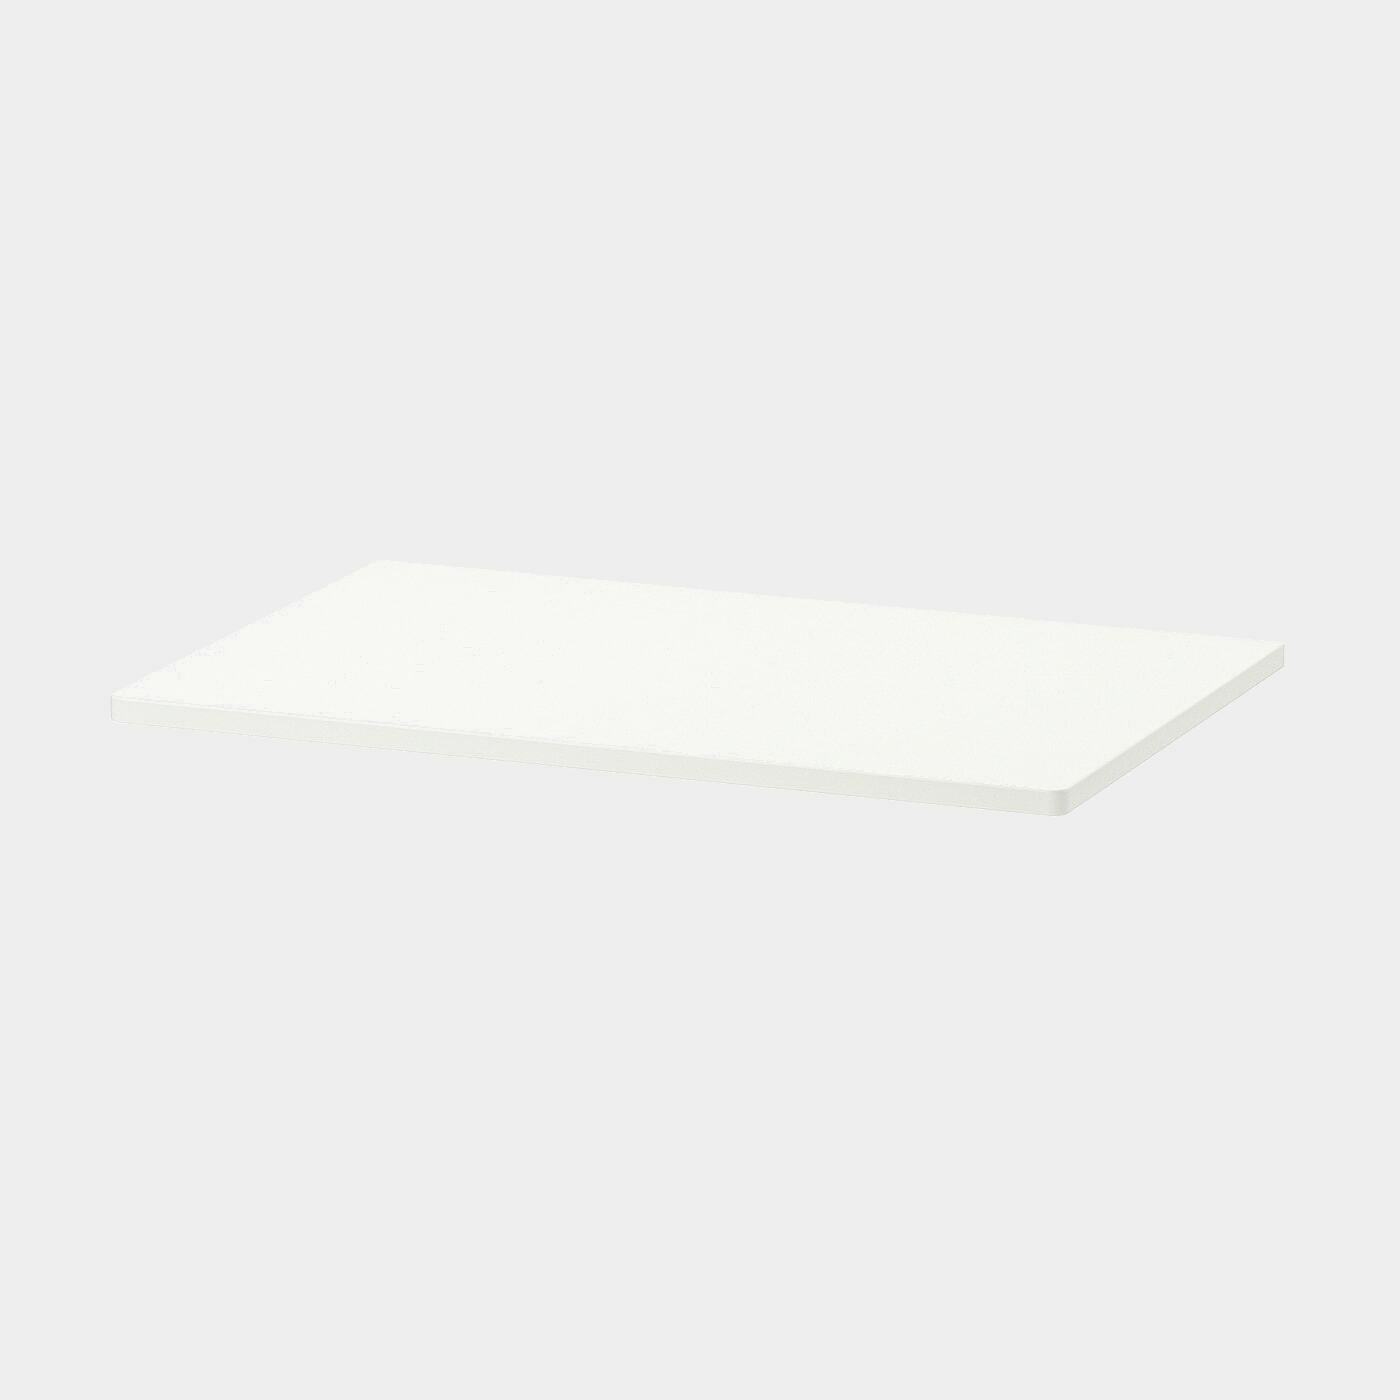 SMÅSTAD Deckplatte für Korpus  -  - Möbel Ideen für dein Zuhause von Home Trends. Möbel Trends von Social Media Influencer für dein Skandi Zuhause.